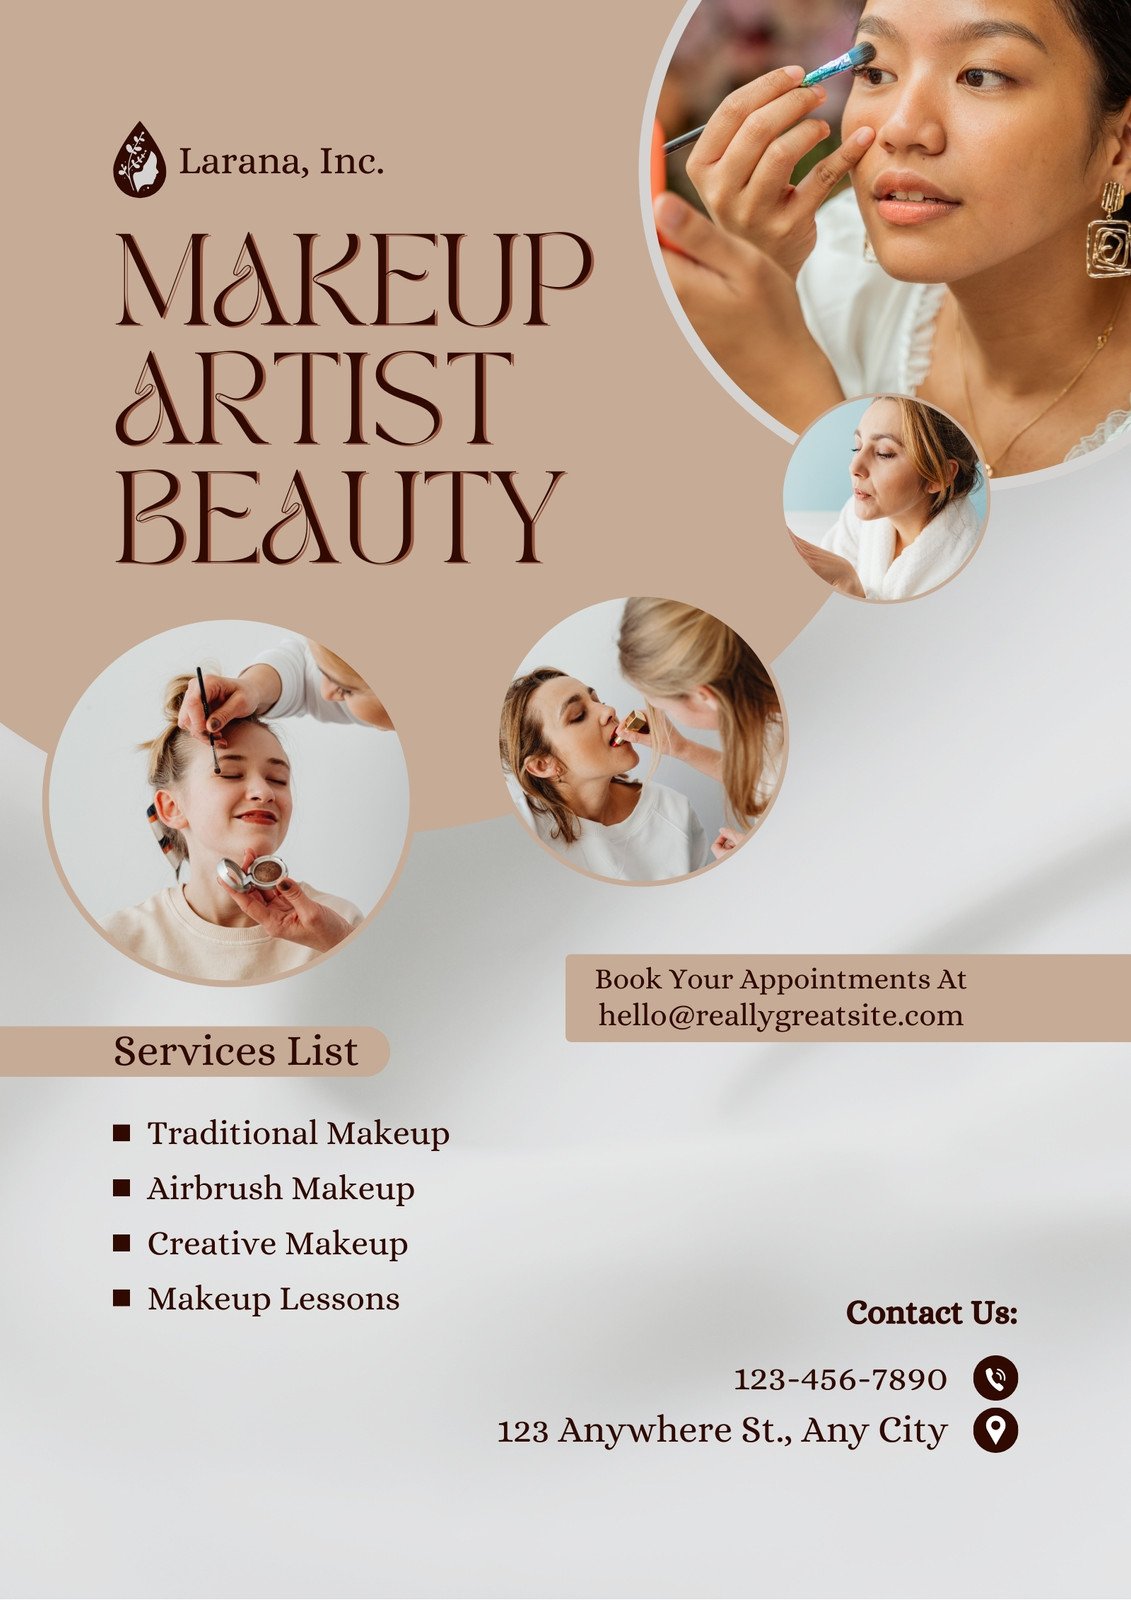 Makeup Deals Flyer, DIY Flyer Template Design, Make up Sale Flyer